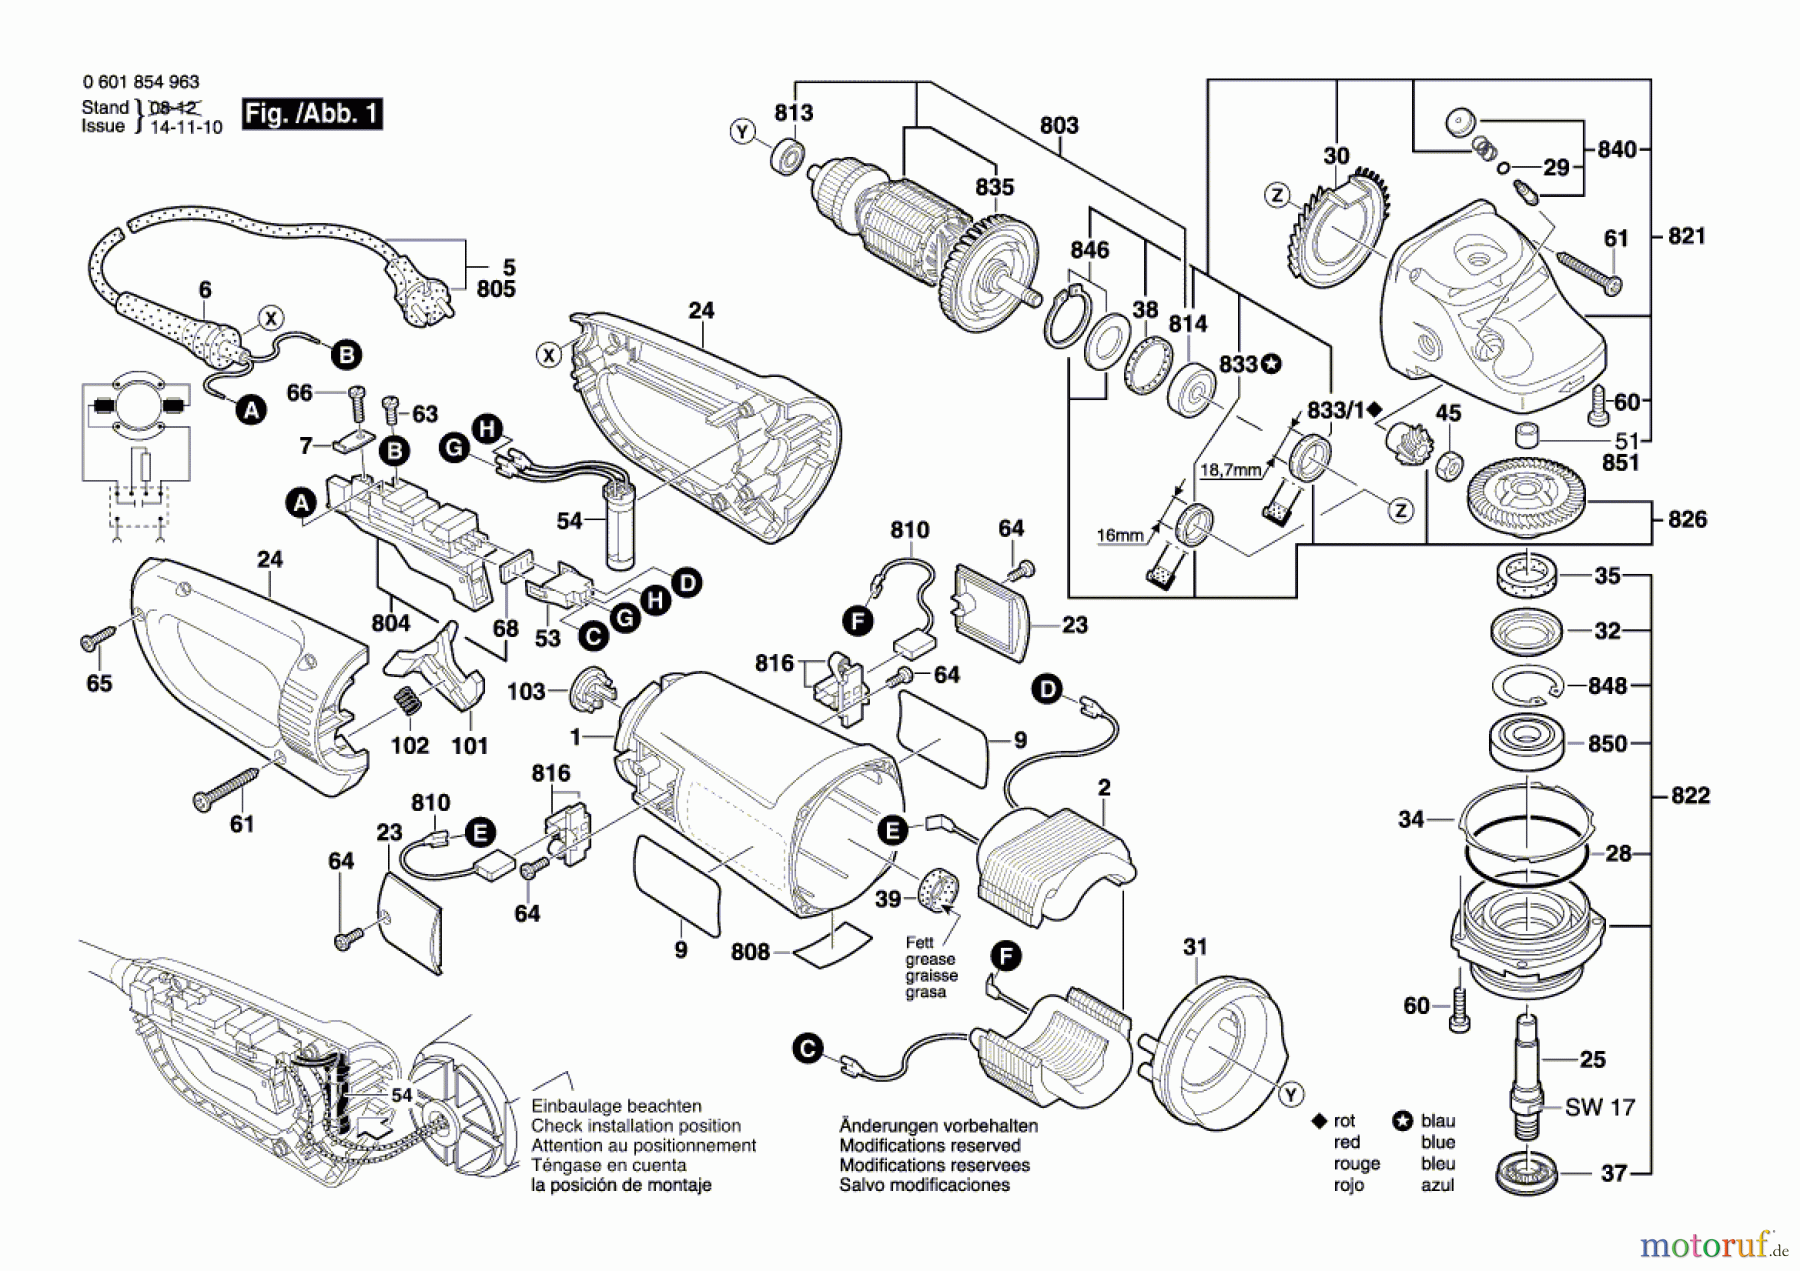  Bosch Werkzeug Winkelschleifer BTI-WKS 230 E Seite 1